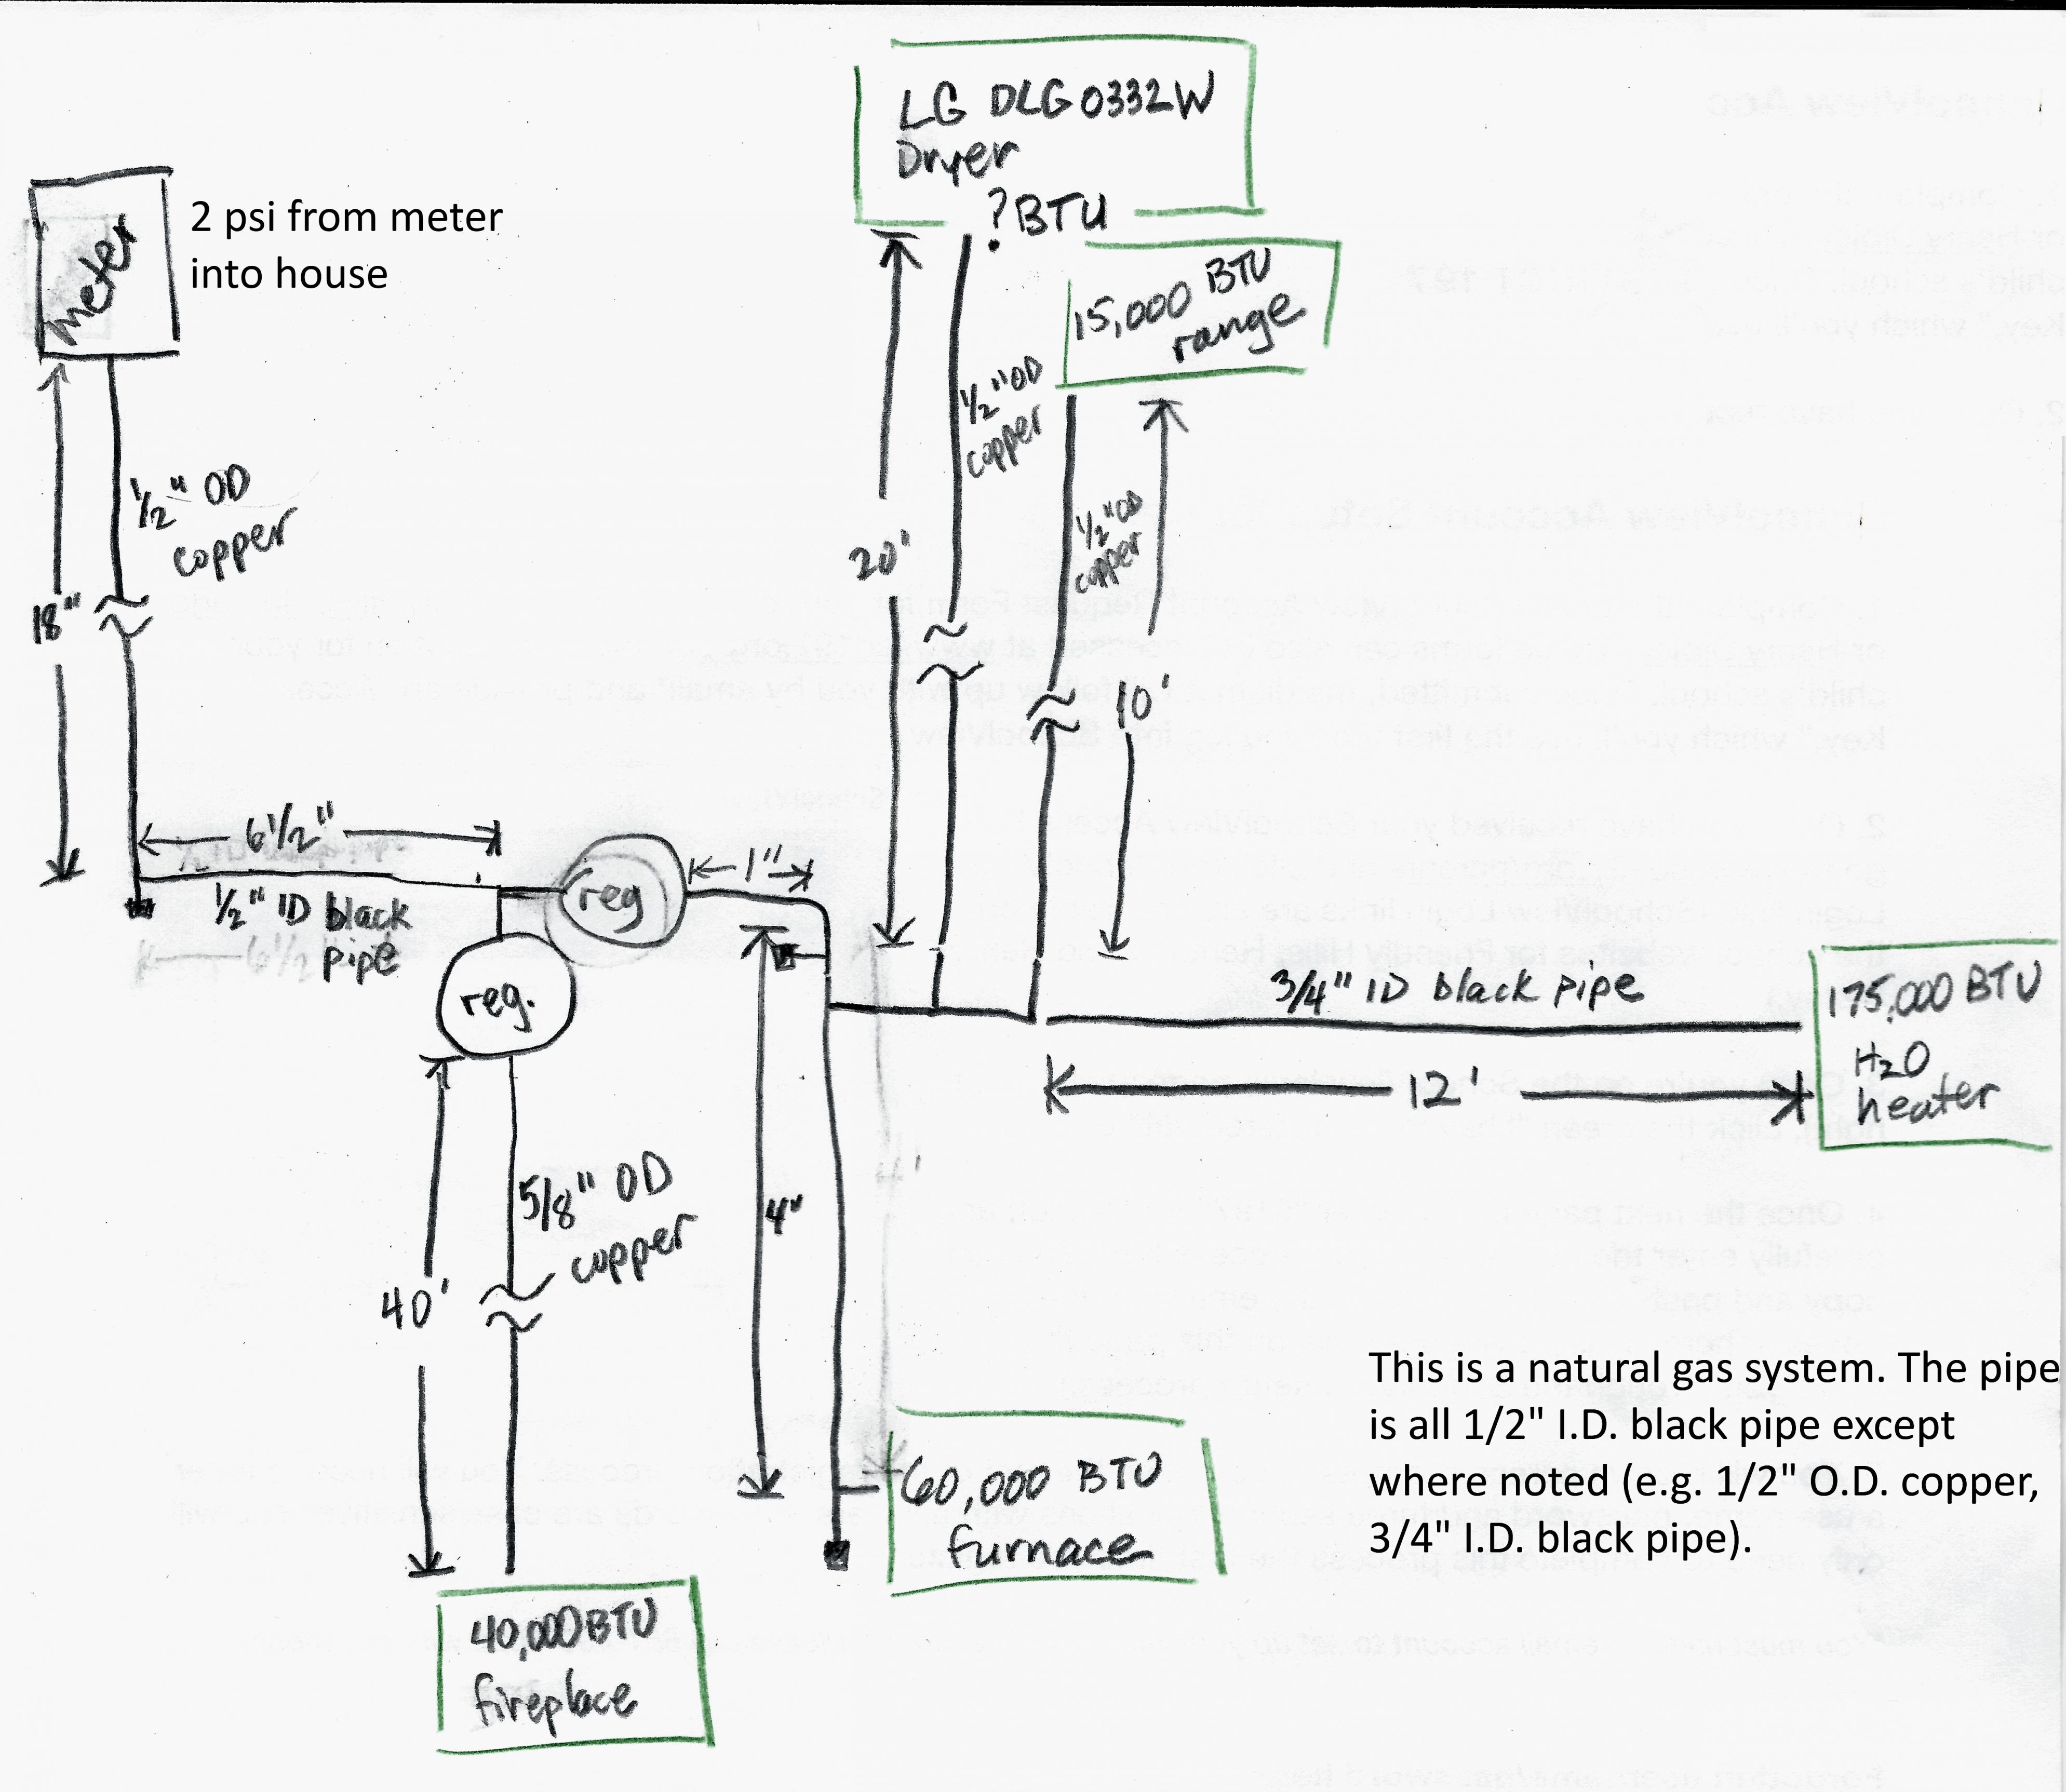 Craftsman Lawn Mower Model 917 Wiring Diagram Inspirational 830 Watts Block Heater Wiring Diagram Wiring Wiring Diagrams